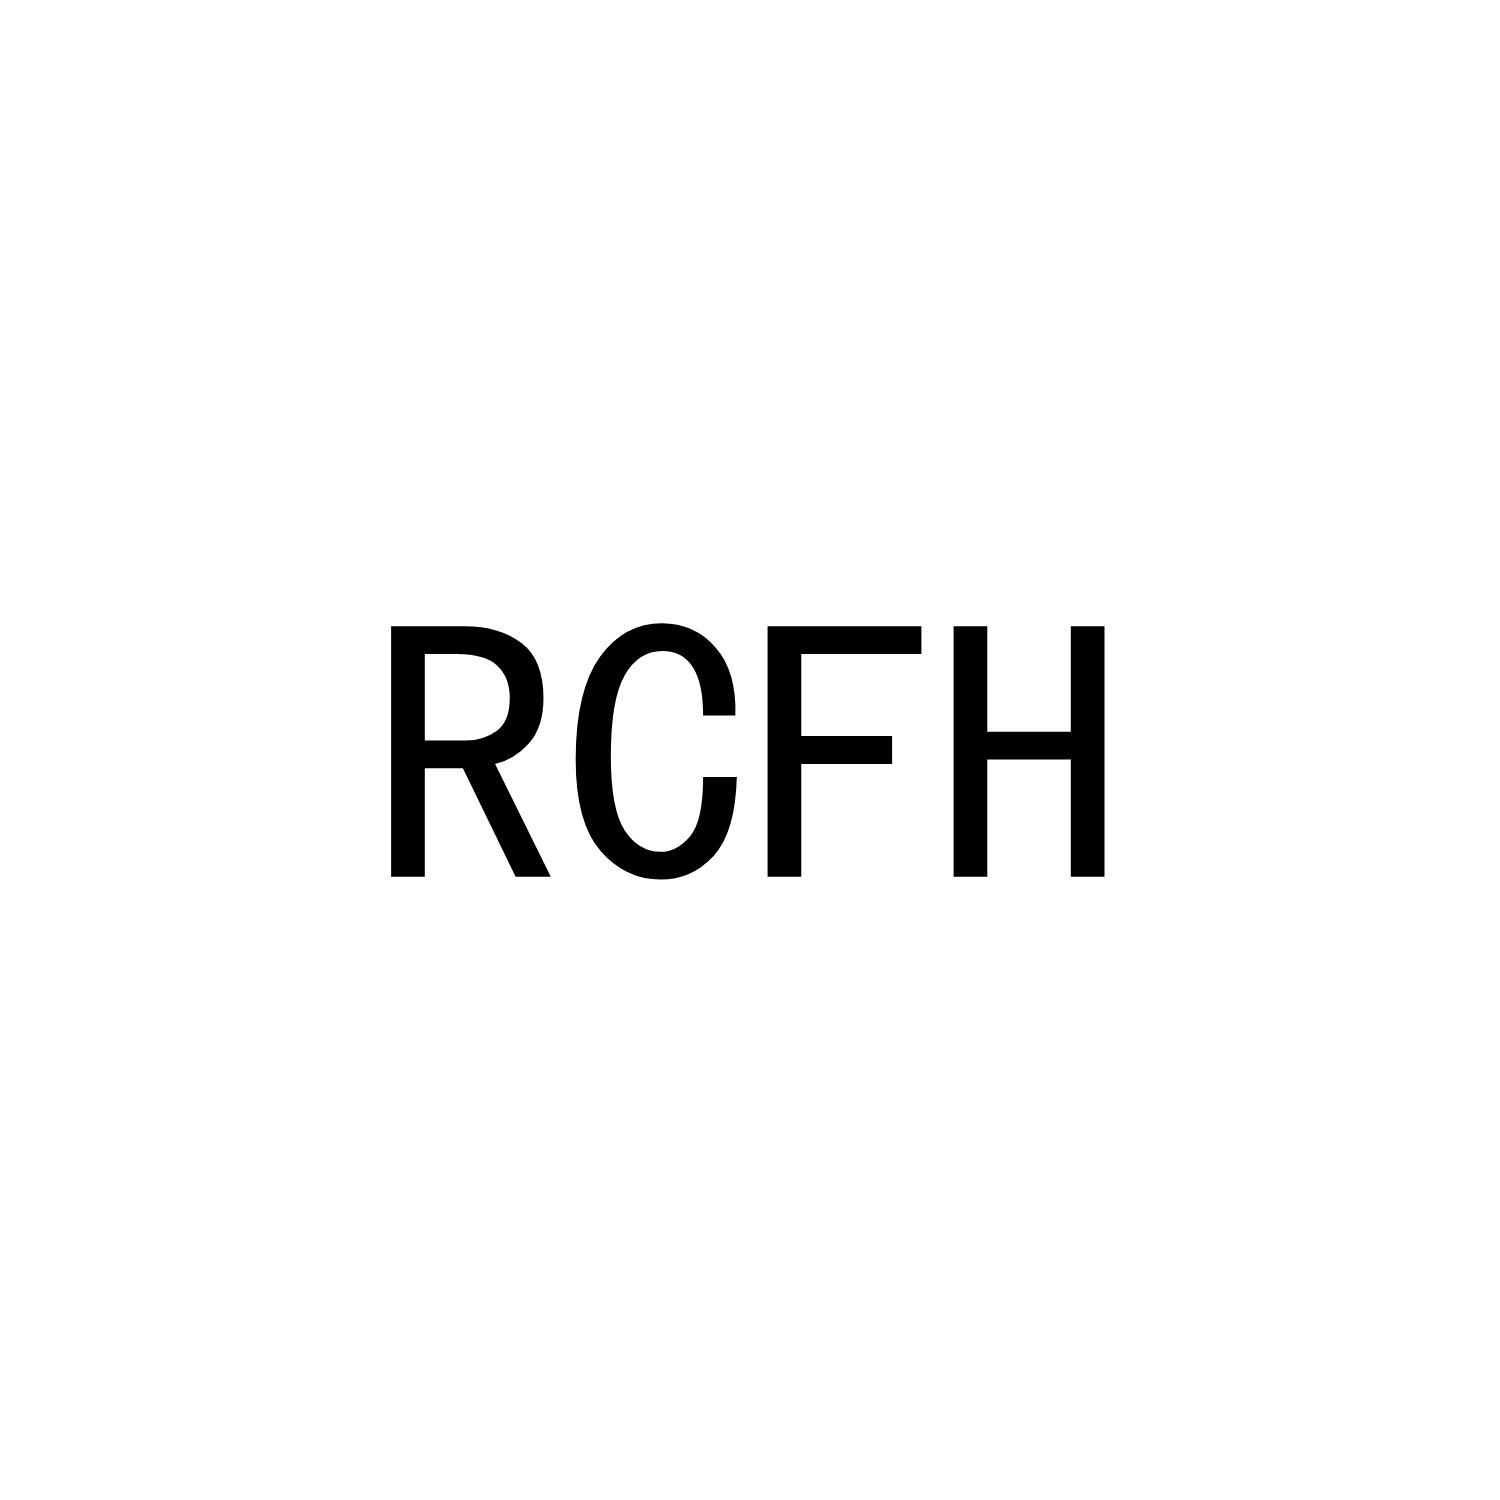 RCFH